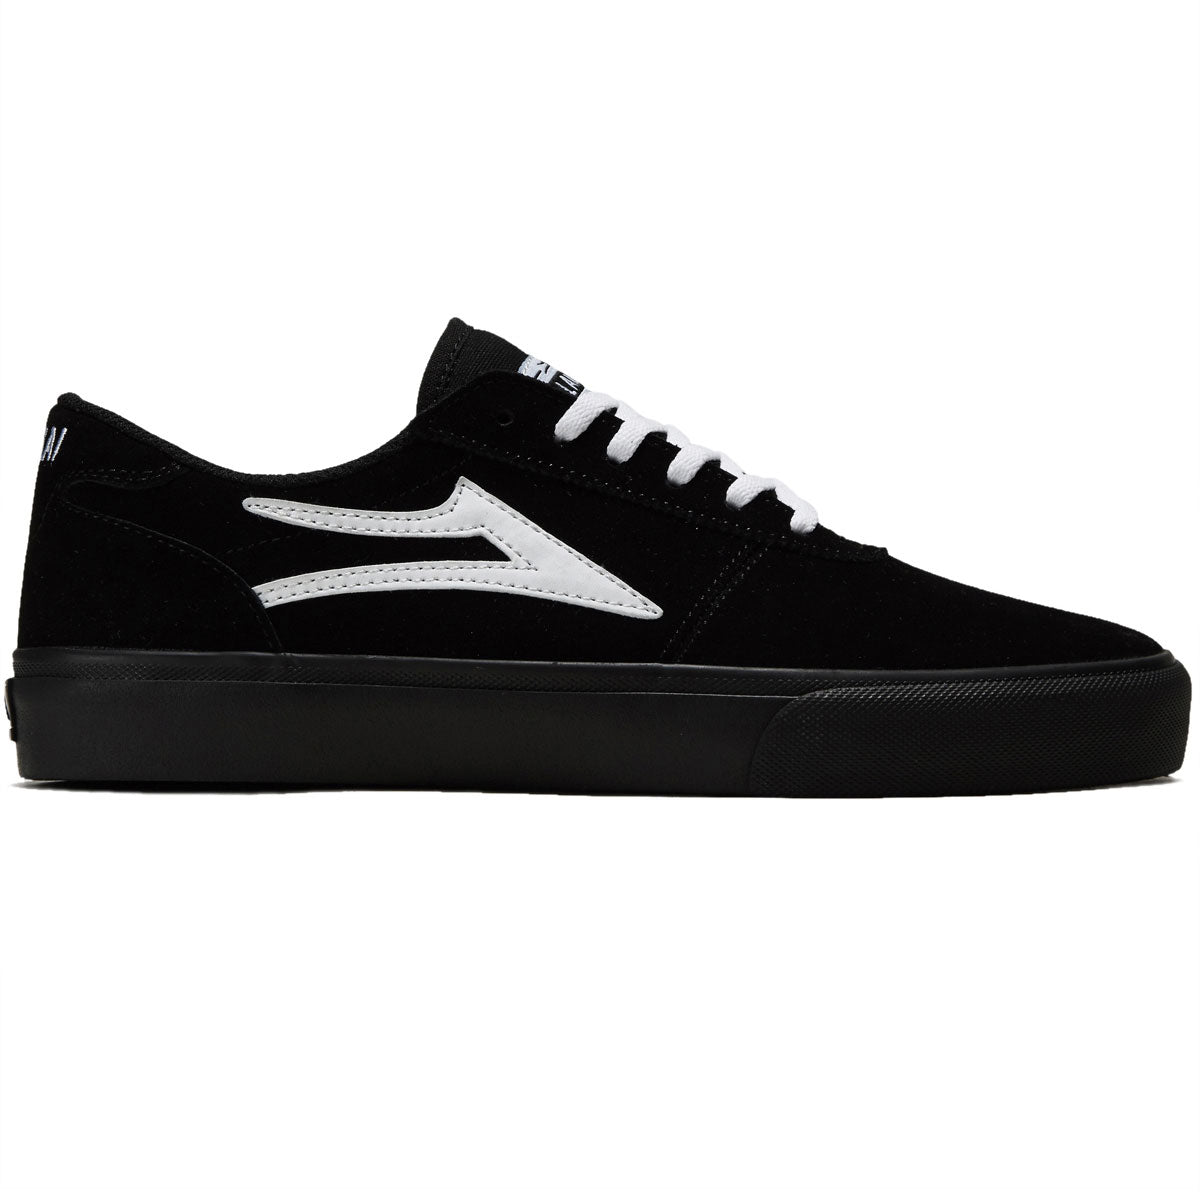 Lakai Manchester Shoes - Black/White image 1